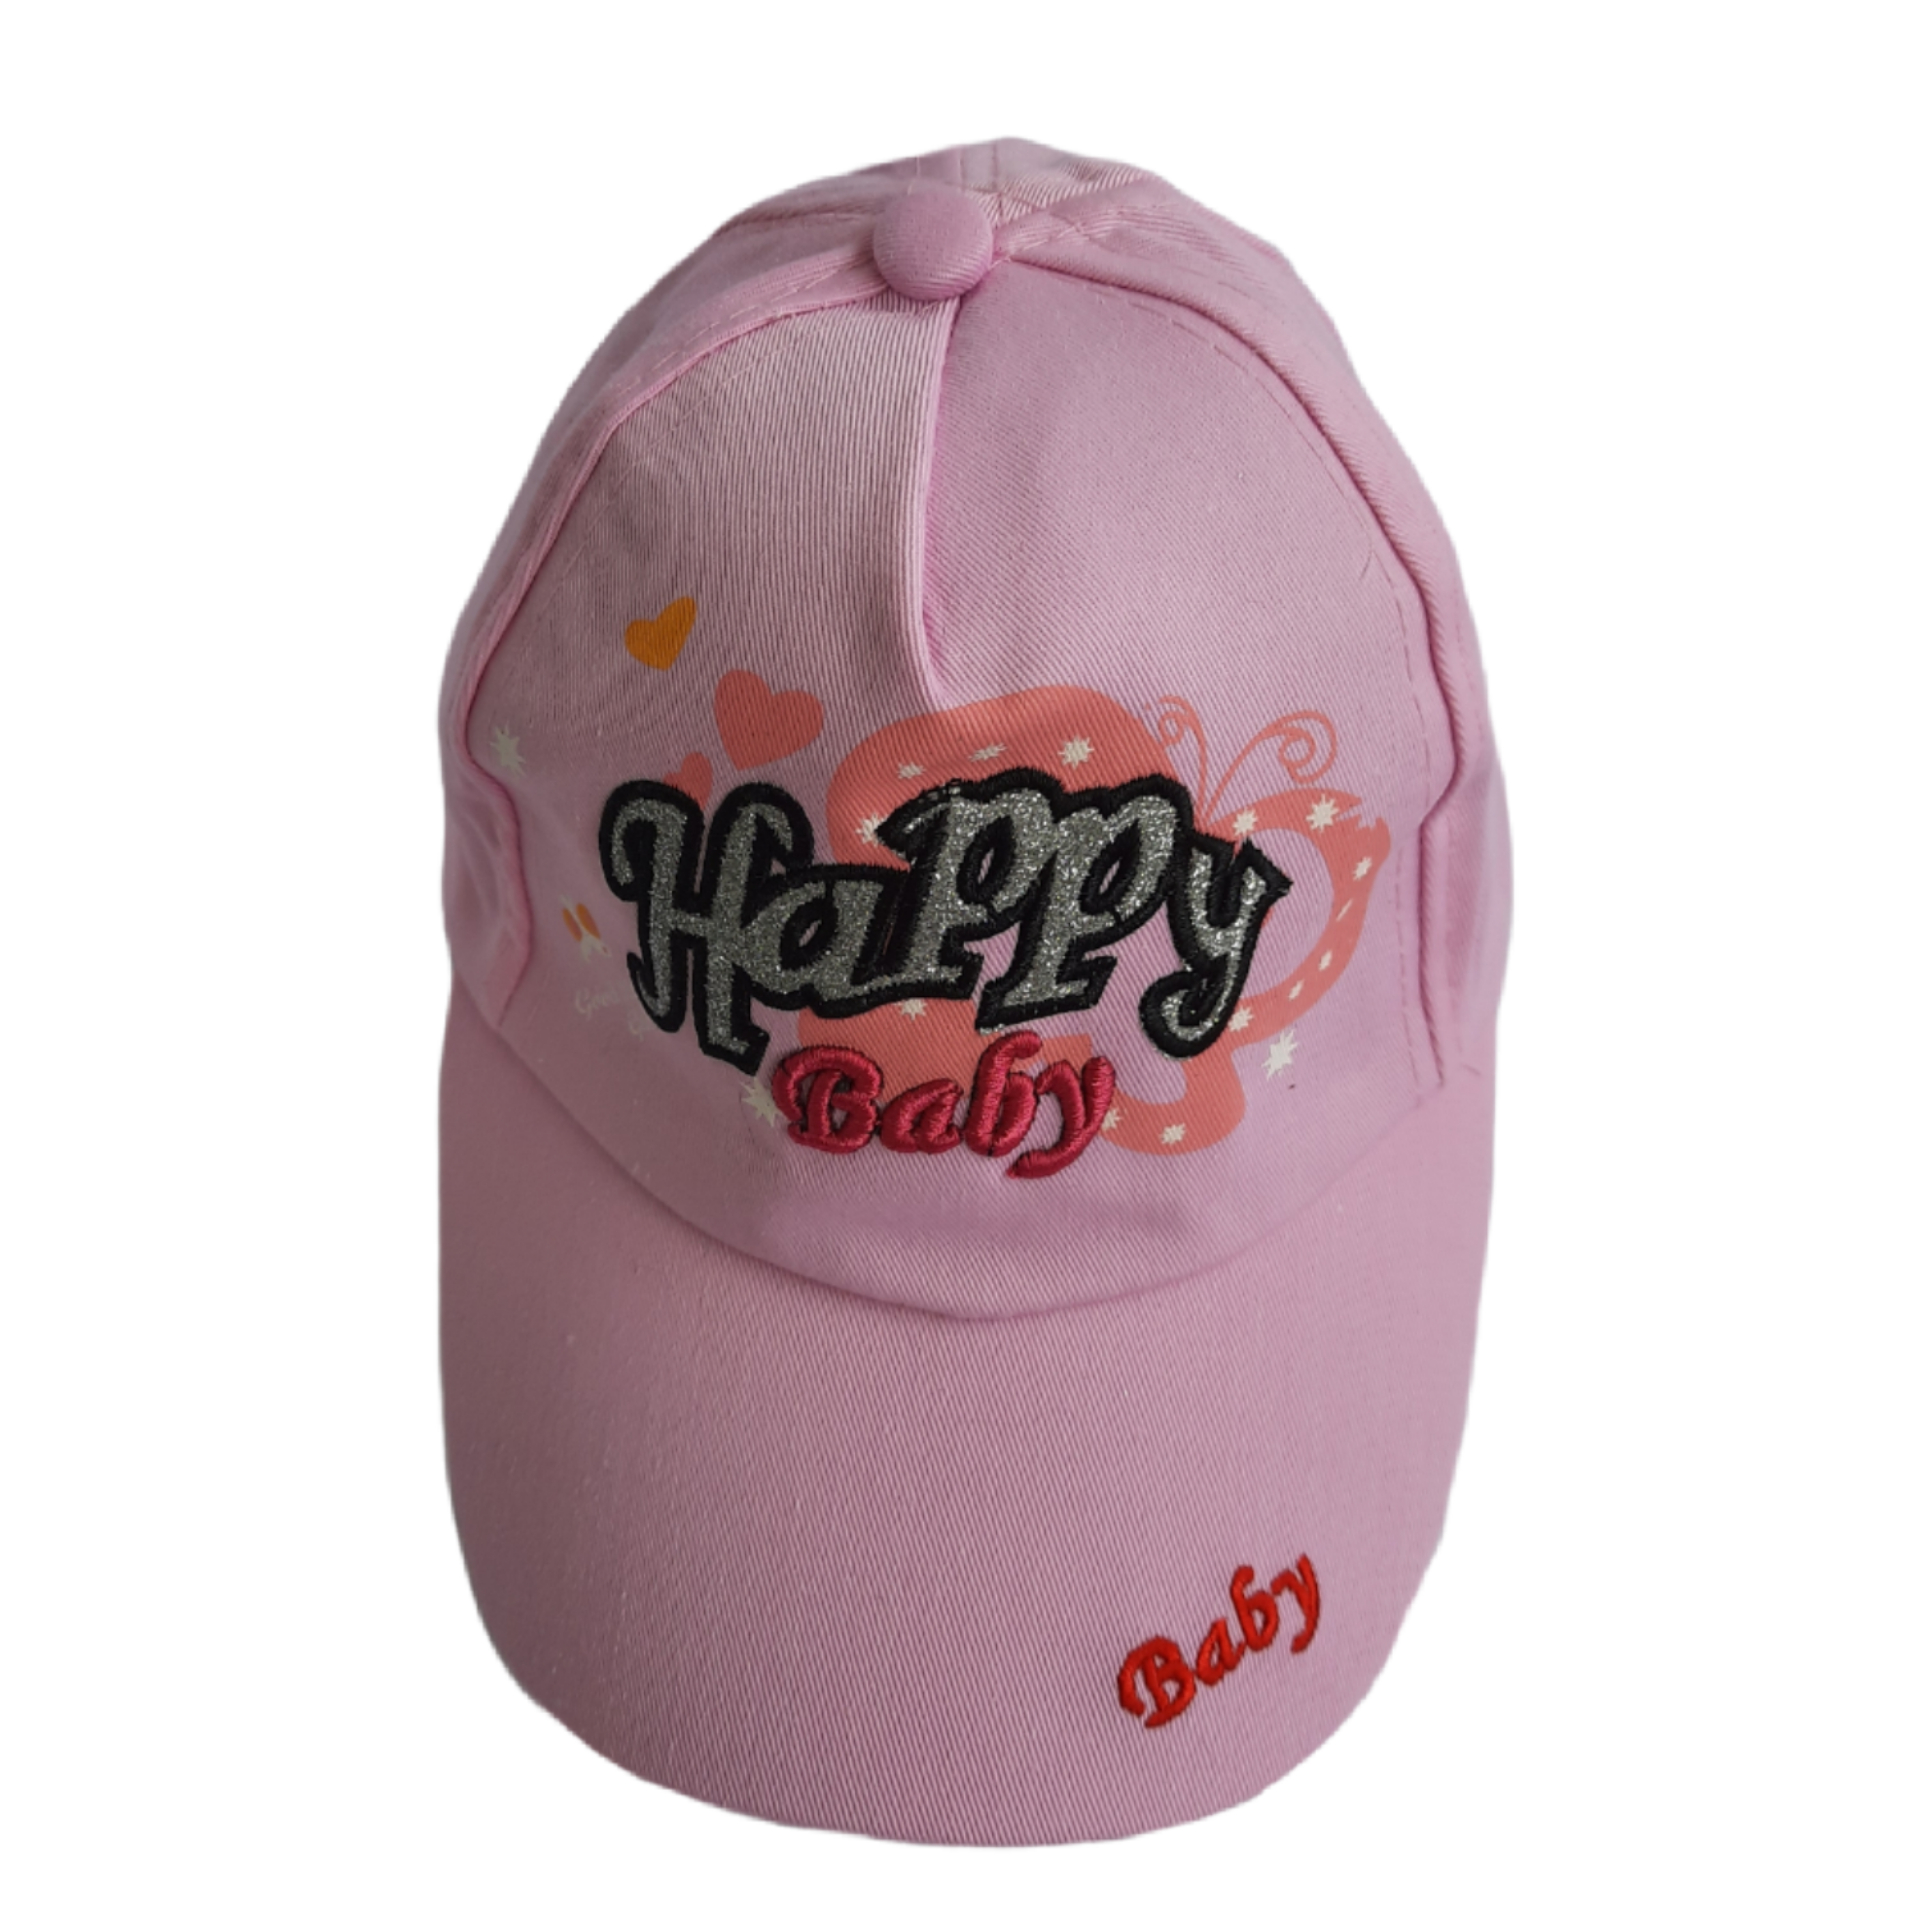 کلاه بچگانه مدل Happy baby رنگ صورتی